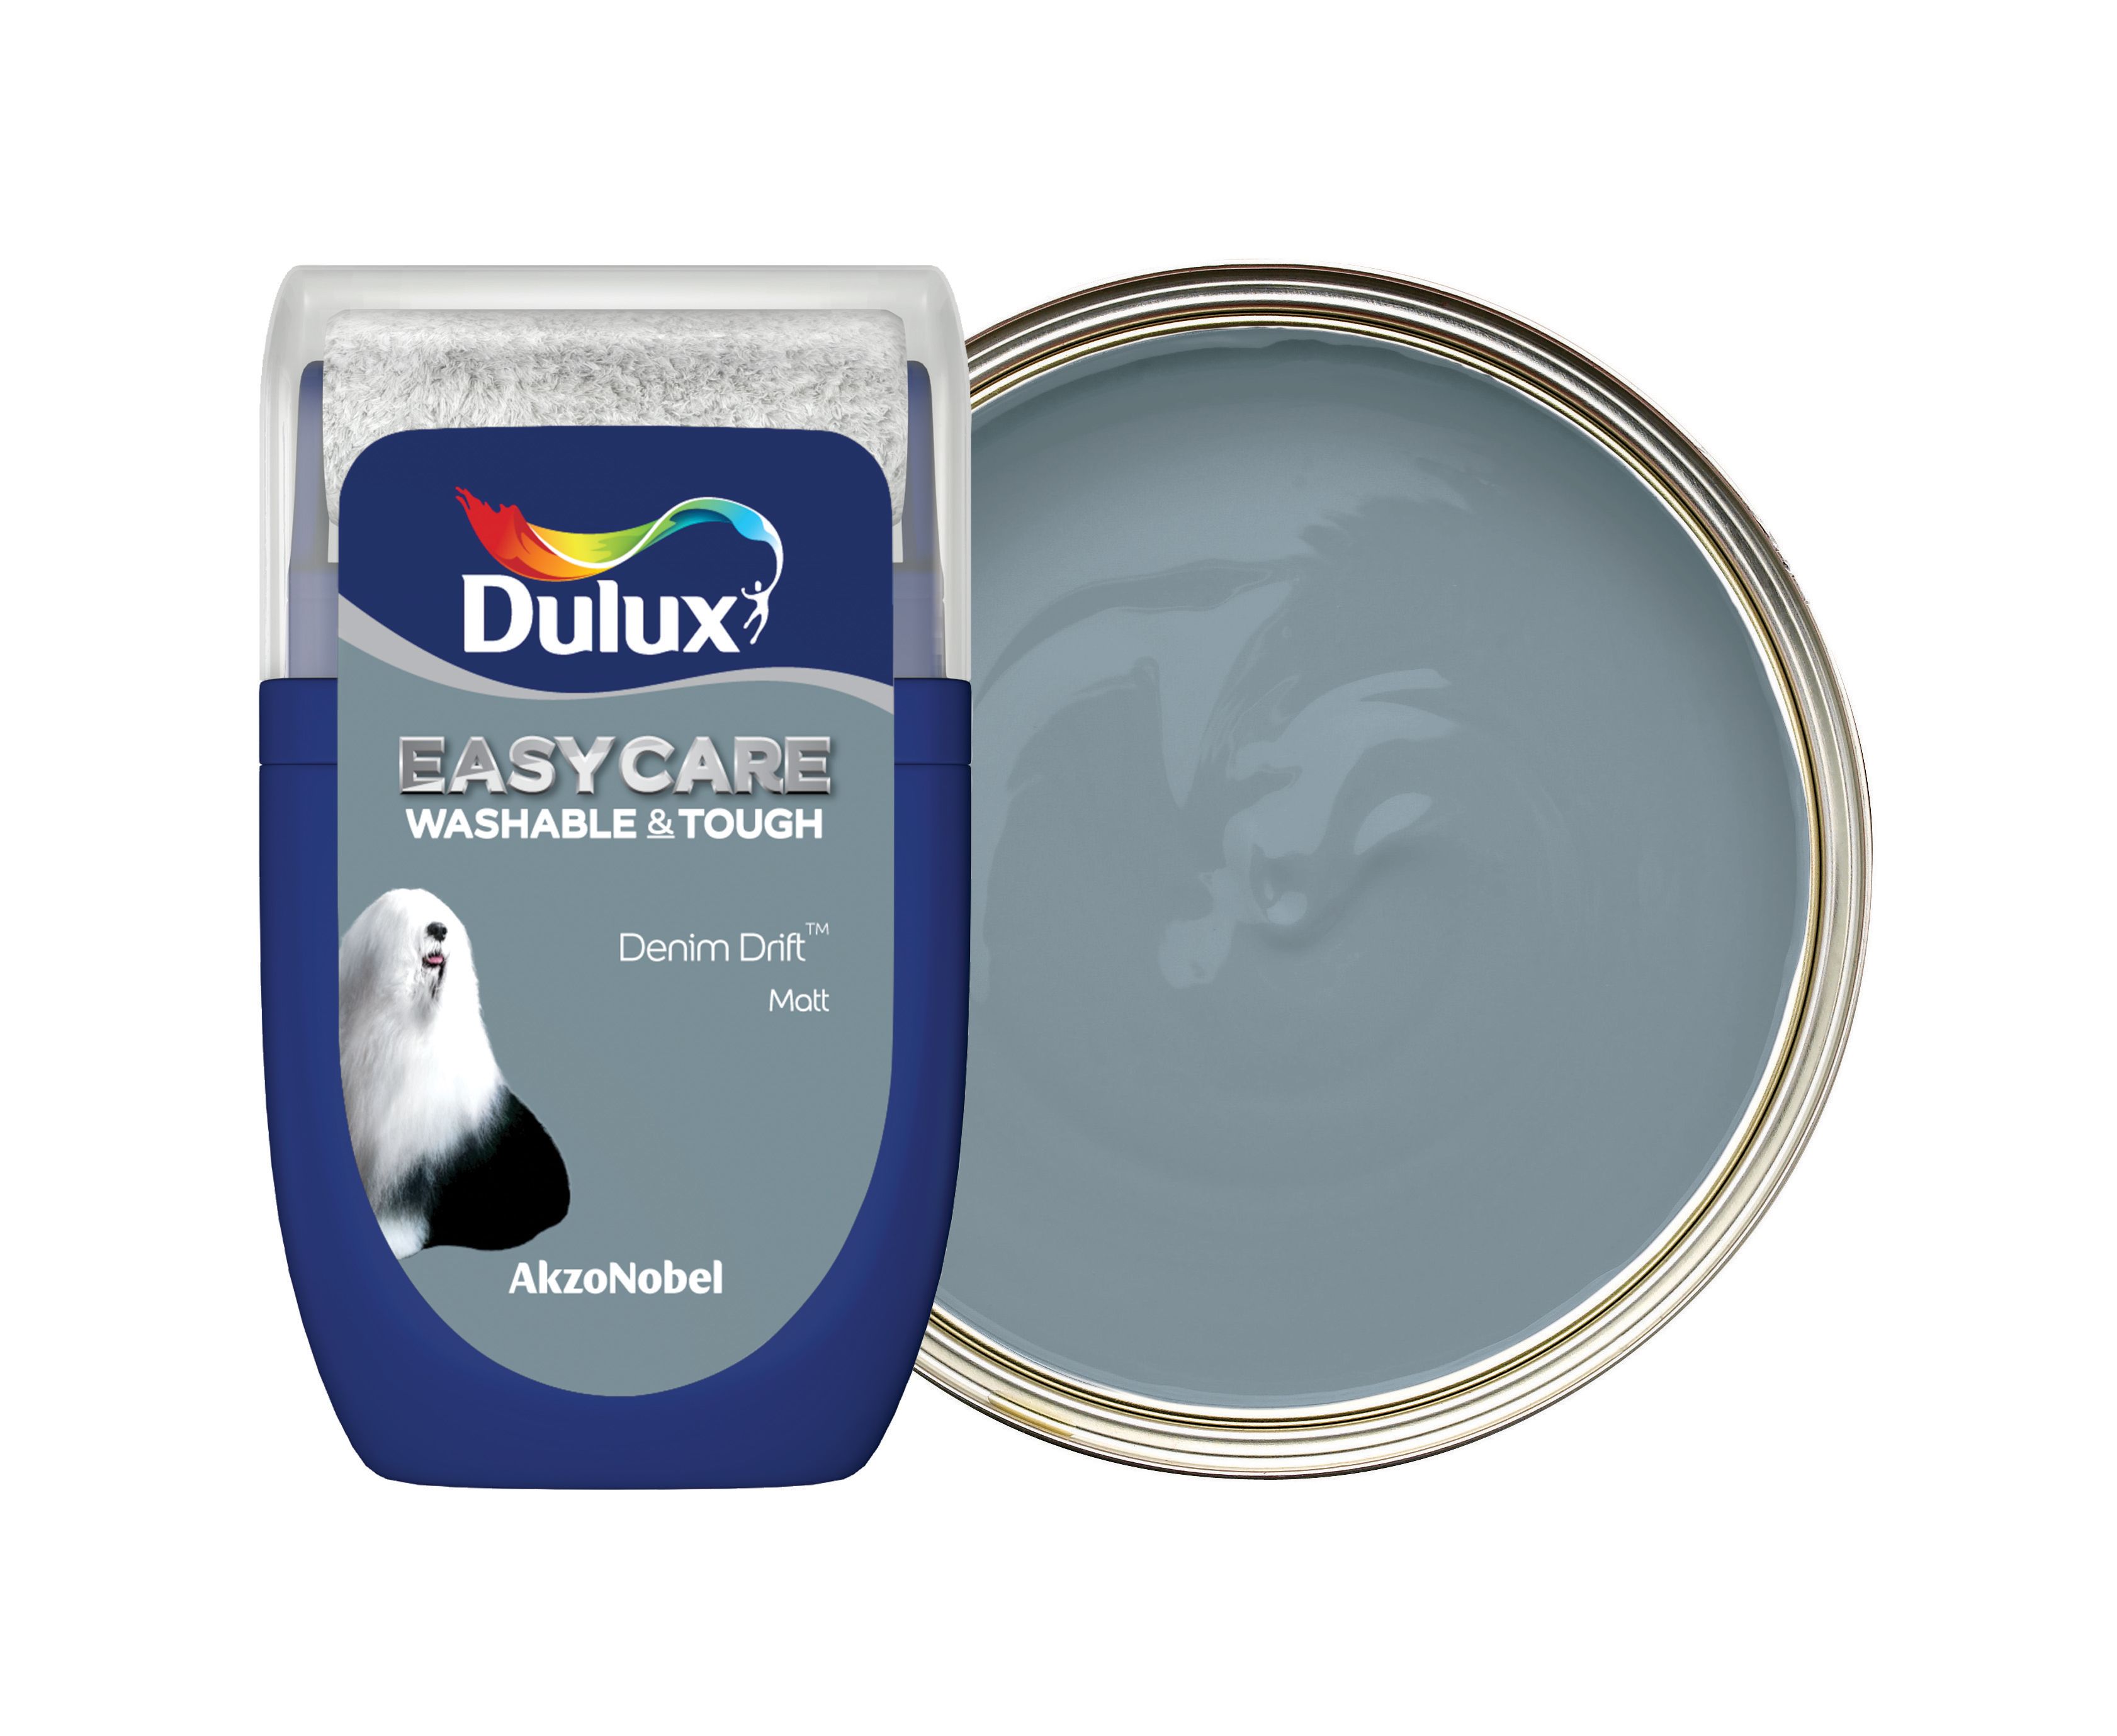 Dulux Easycare Washable & Tough Paint Tester Pot - Denim Drift - 30ml